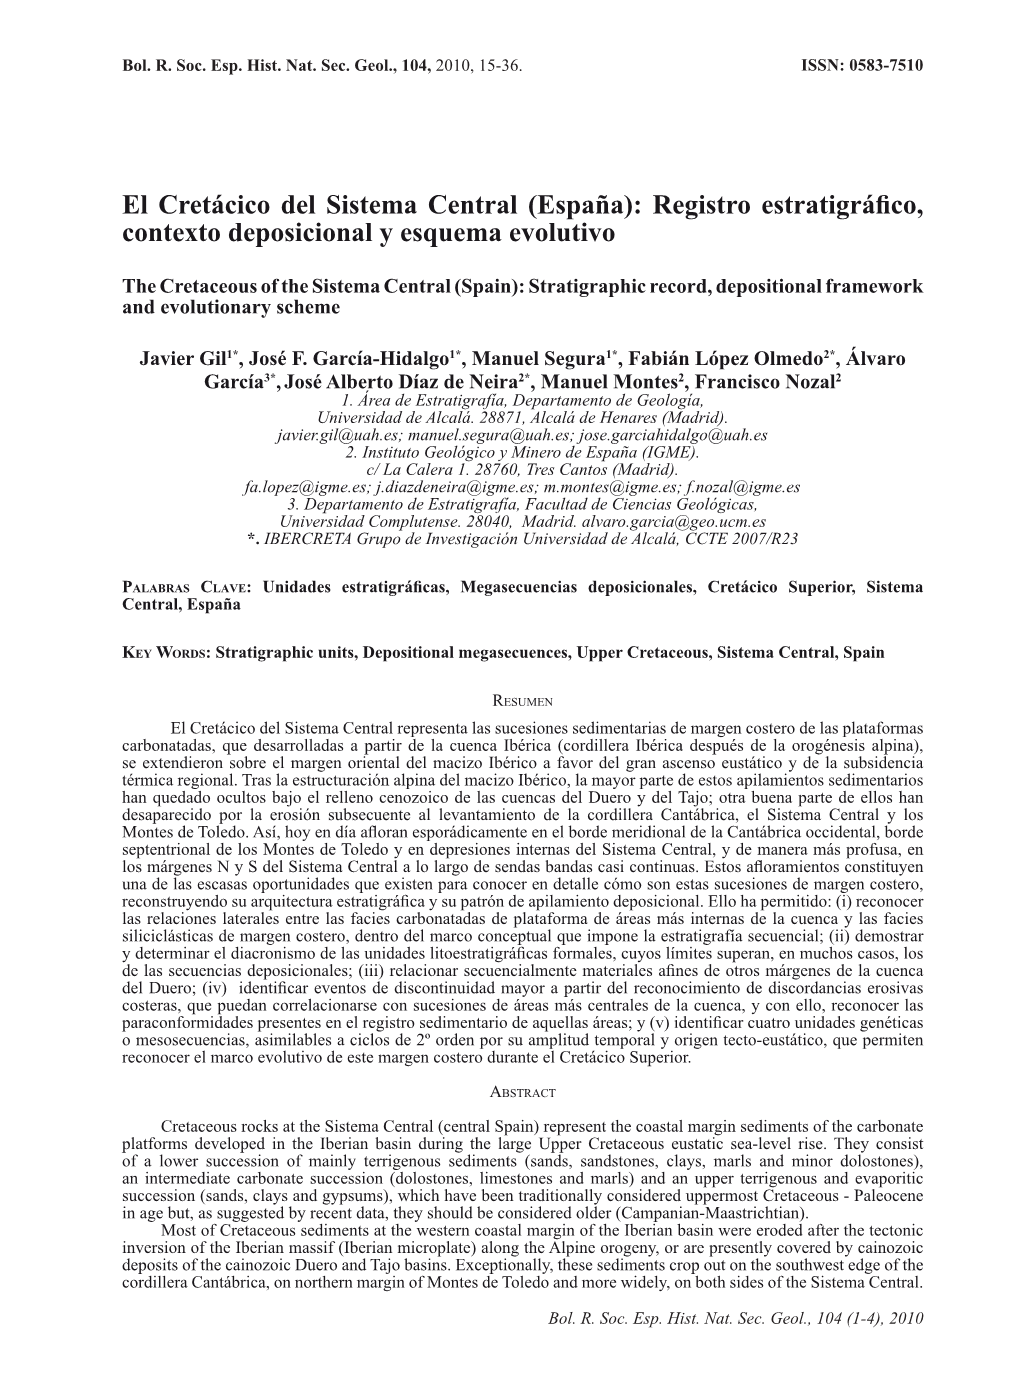 El Cretácico Del Sistema Central (España): Registro Estratigráfico, Contexto Deposicional Y Esquema Evolutivo